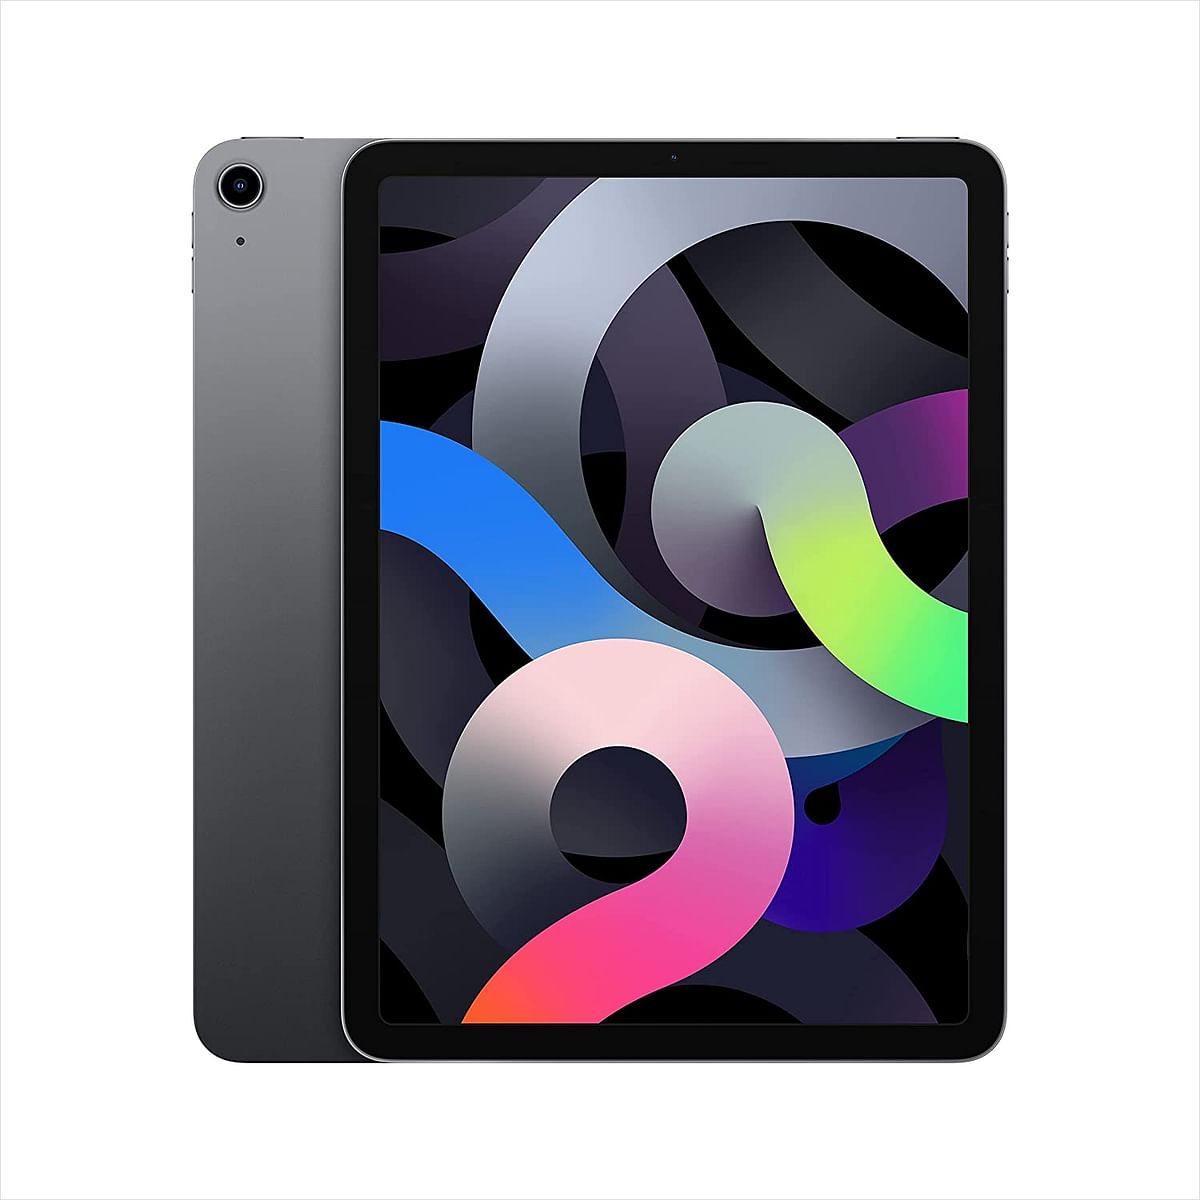 Apple iPad Air 2020 10.9 Inch 4th Generation Wi-Fi 64GB - Space Grey